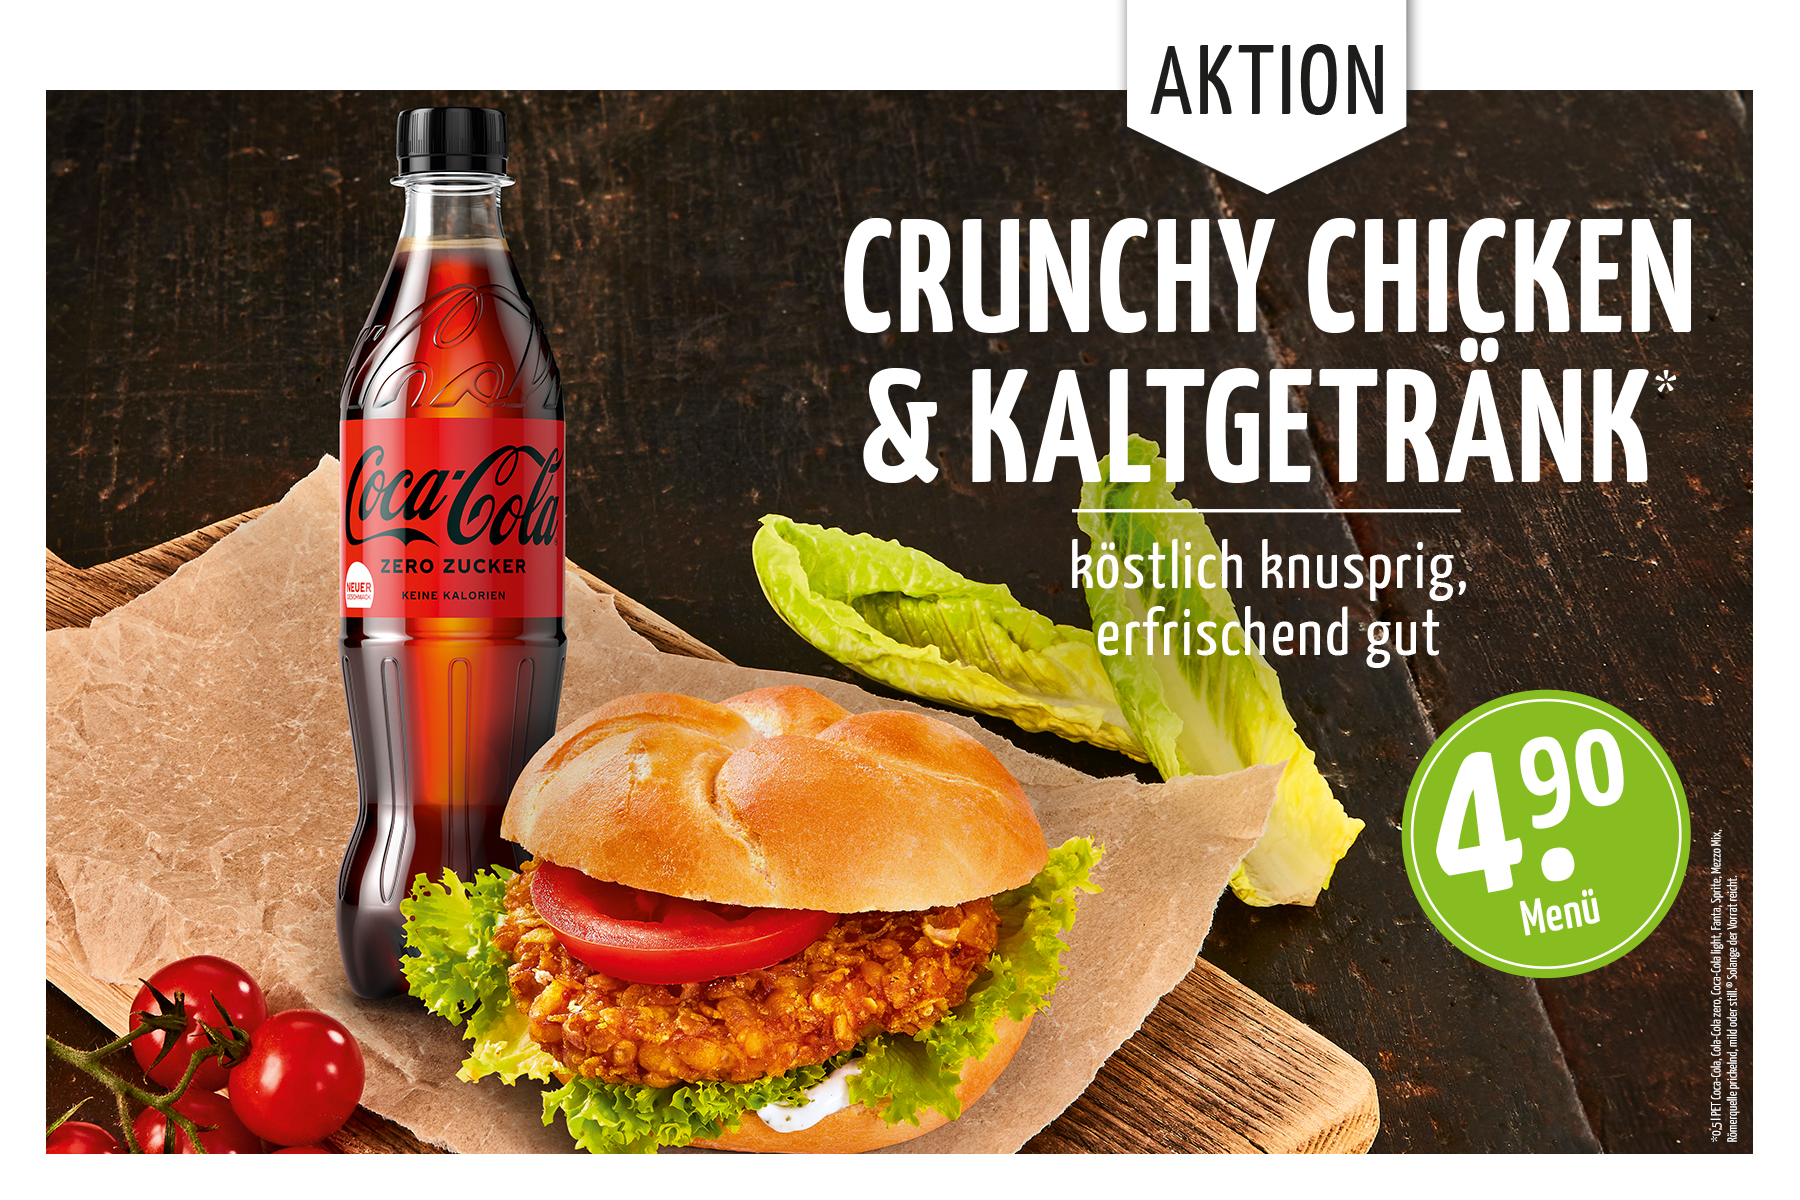 # Cruchy Chicken & Kaltgetränk